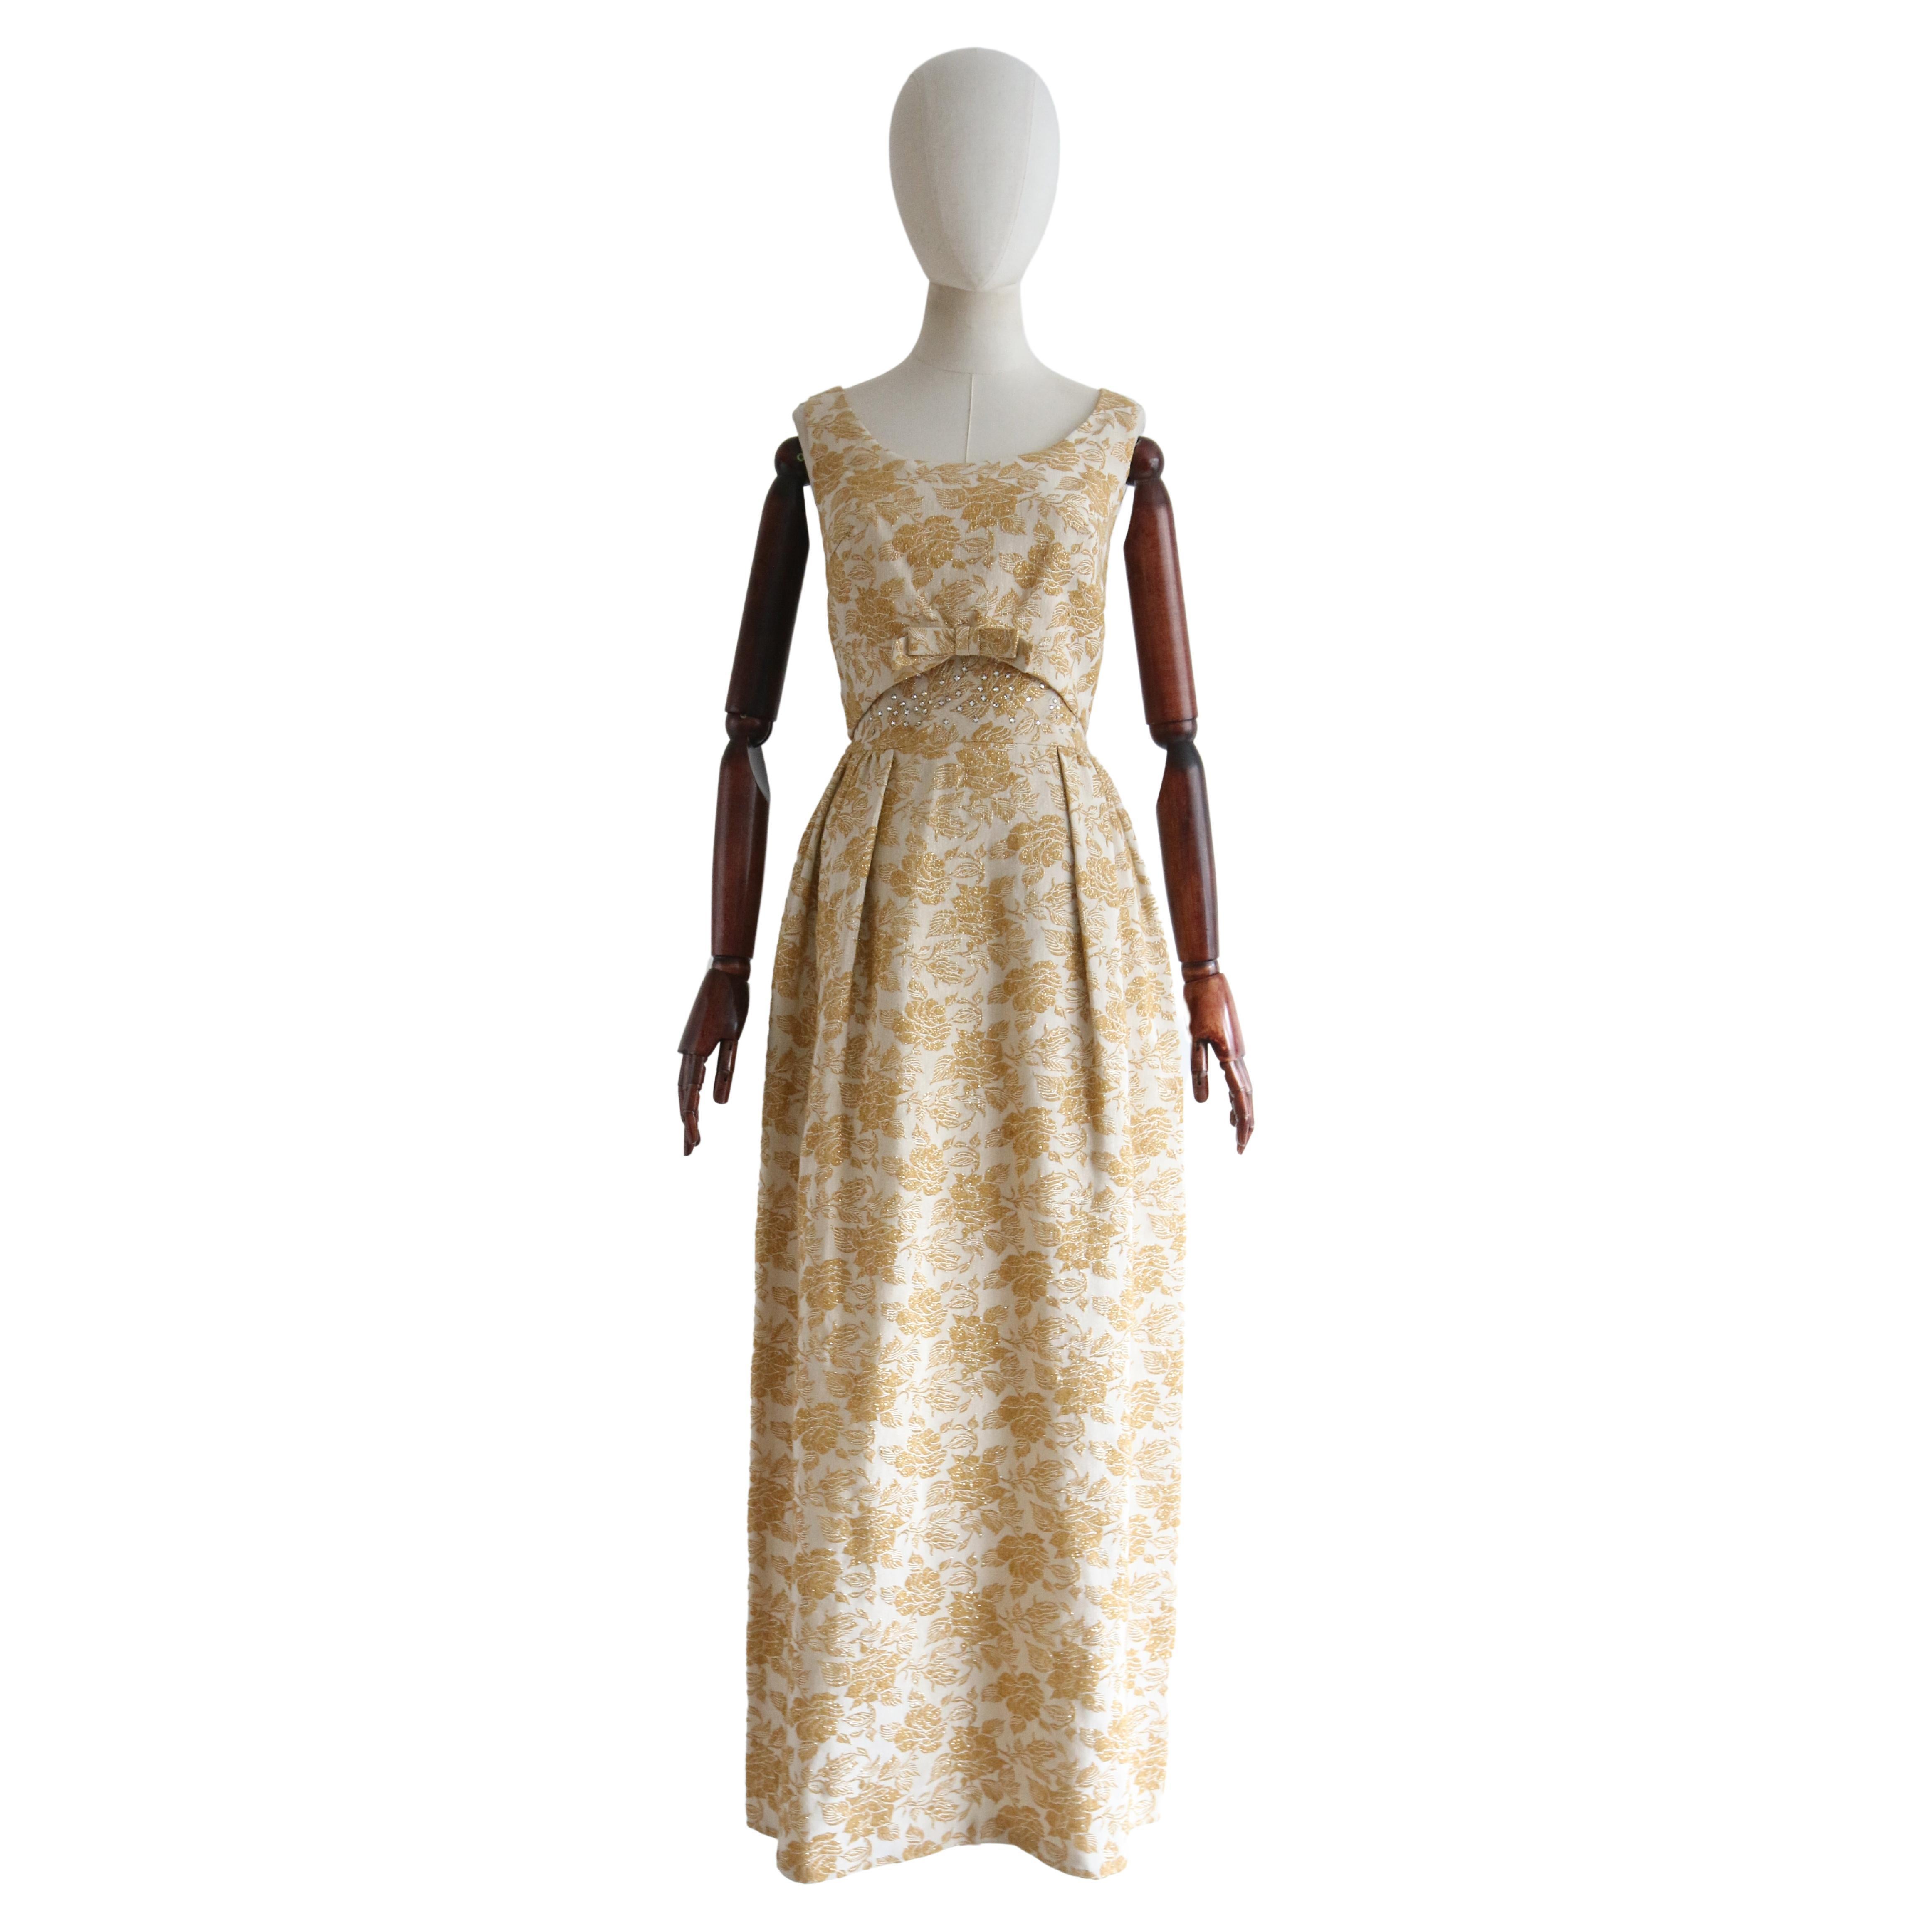  Vintage 1960's Gold Lurex Brocade & Rhinestone Evening Gown UK 8 US 4